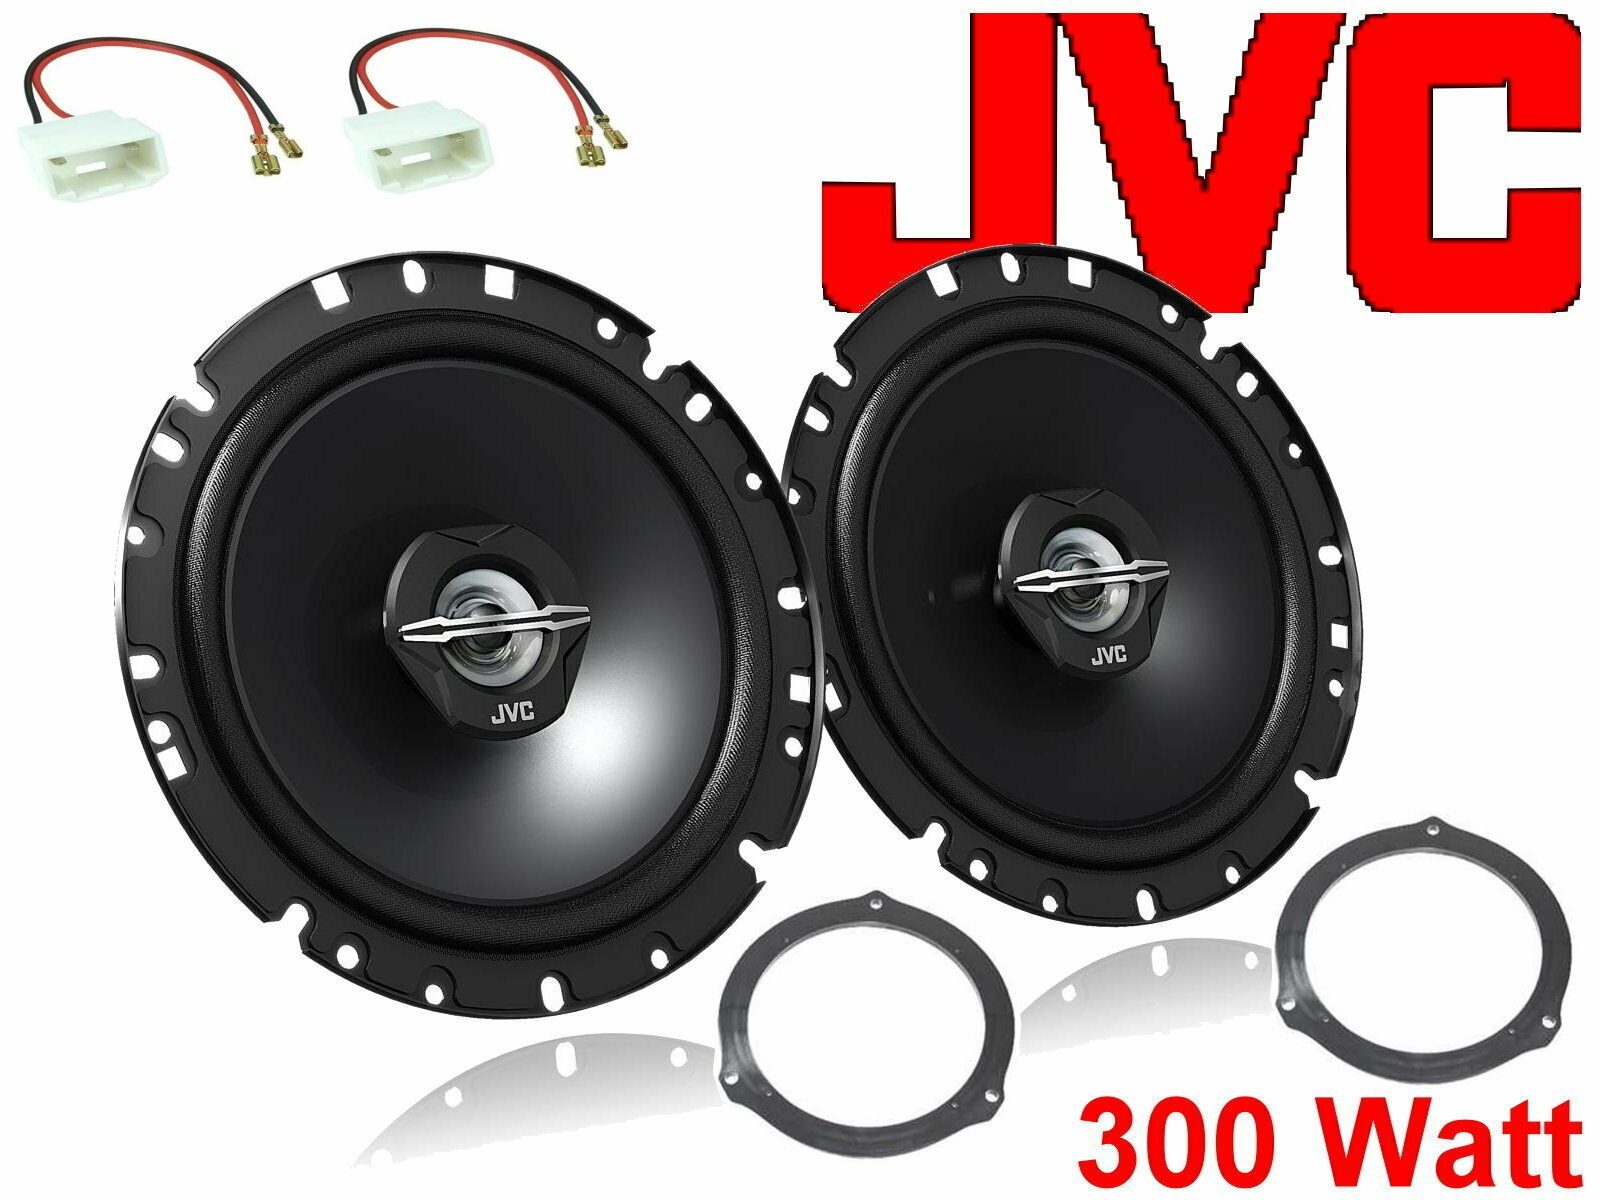 DSX JVC passend für Ford Focus Bj 11/04-11/10 Lautspr Auto-Lautsprecher (30 W)